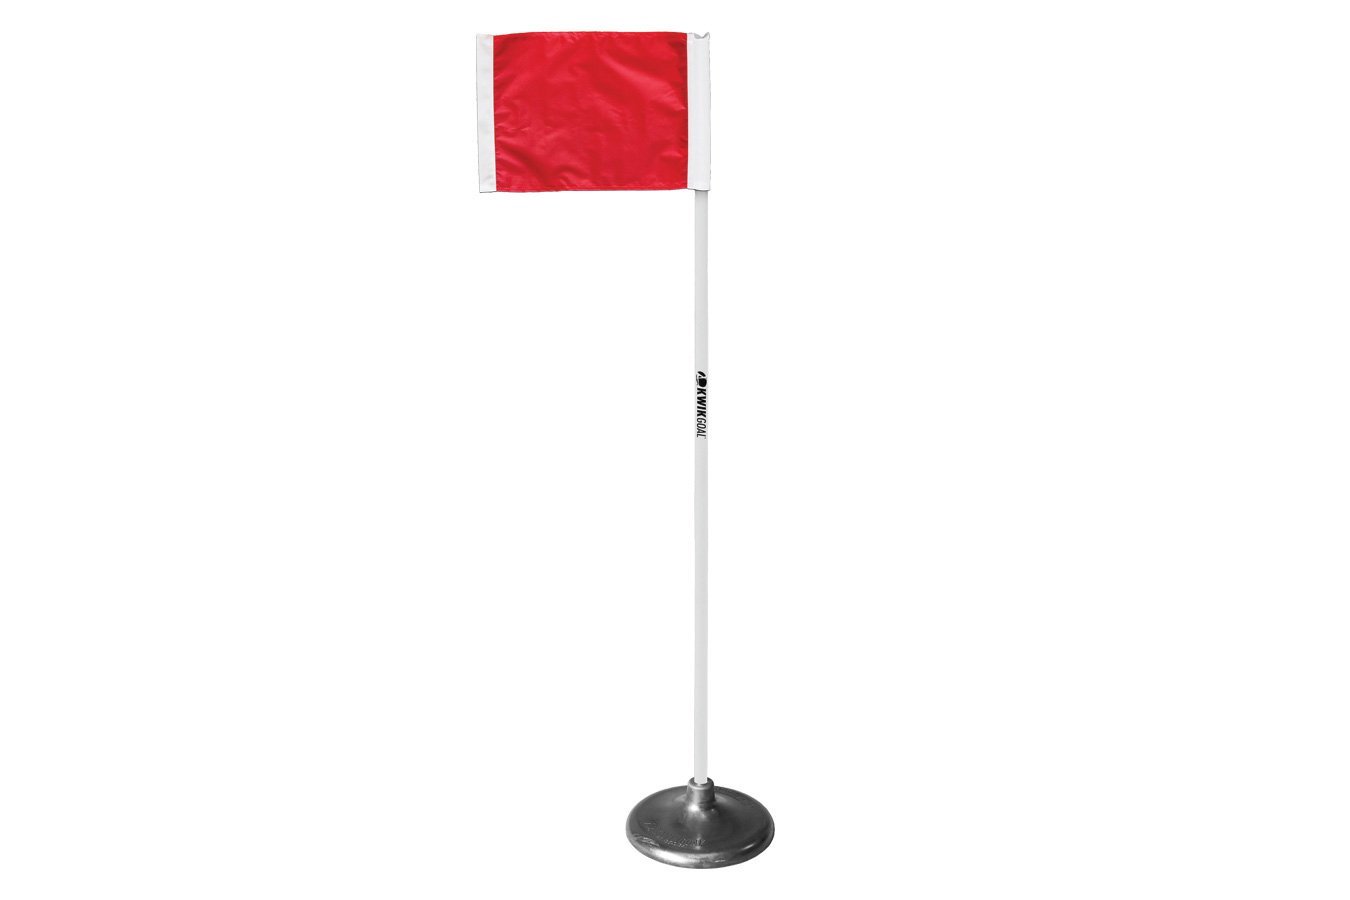 Kwikgoal Premier Corner Flags (set of 4) | 6B1404 Field equipment Kwikgoal Red 